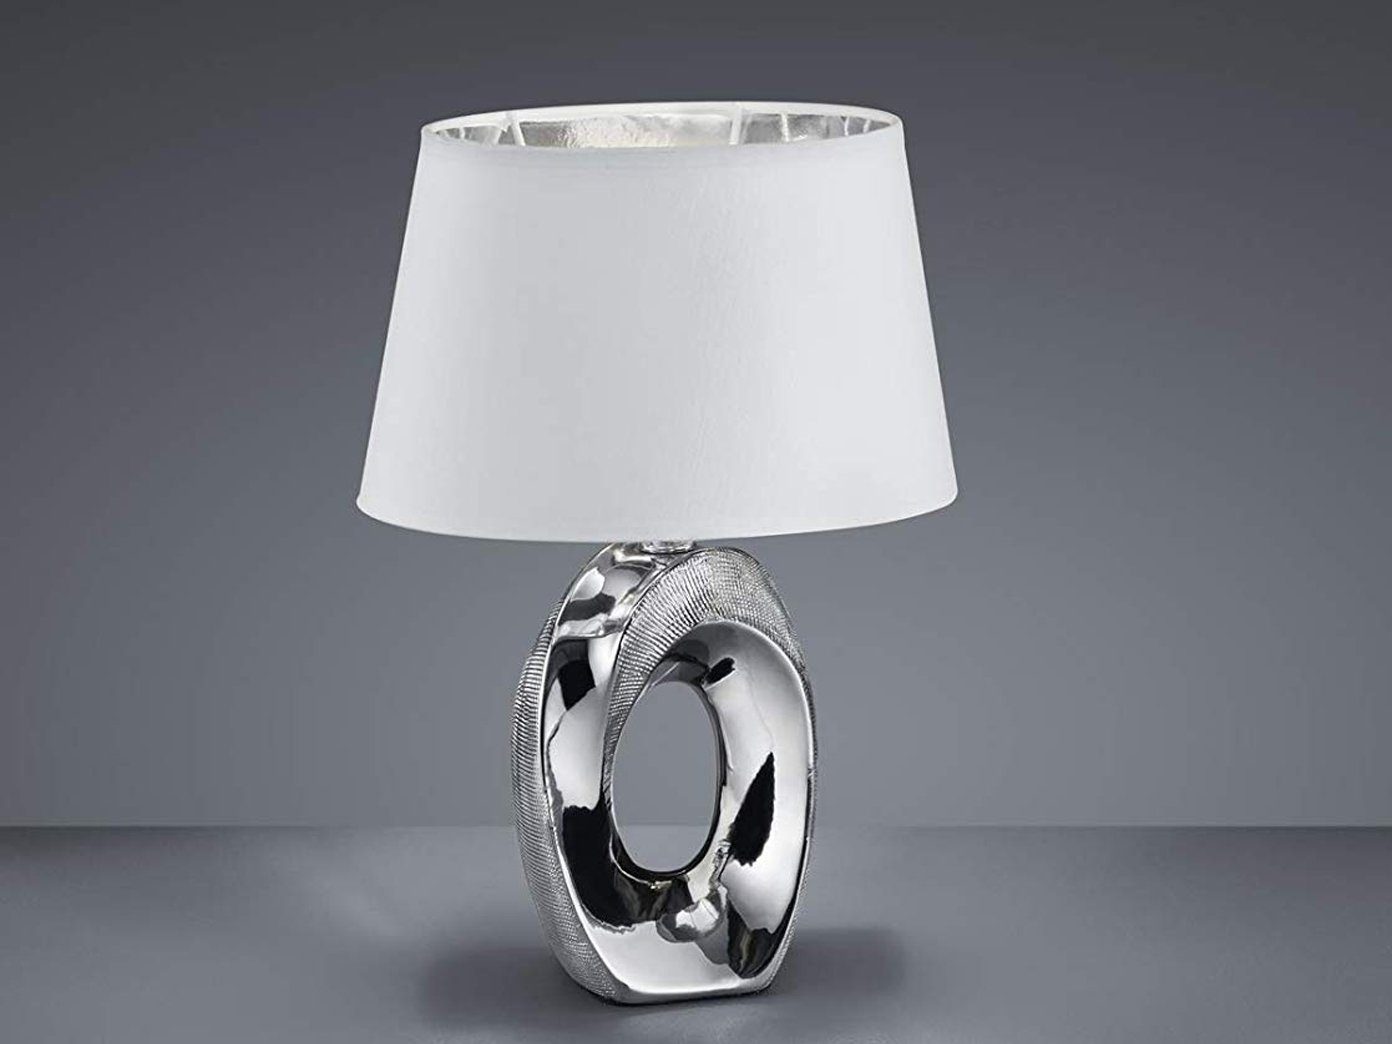 meineWunschleuchte LED Tischleuchte, LED wechselbar, Warmweiß, ausgefallen-e Design-er Lampe mit Stoff Lampenschirm Weiß Silber, 33cm Weiß-Silber | Tischlampen